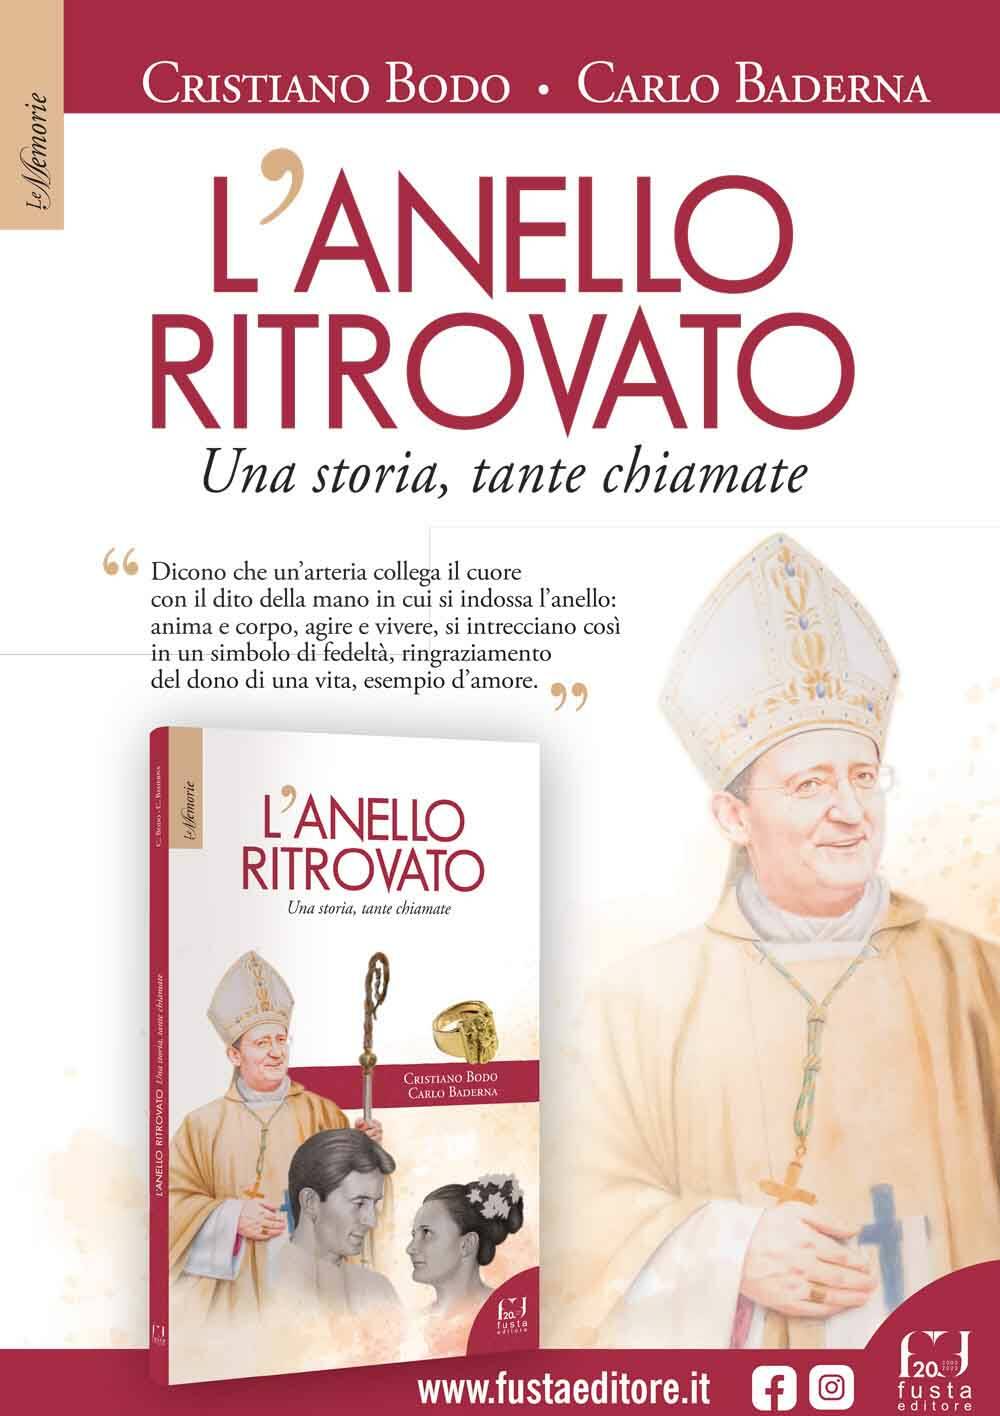 Un libro per raccontare la storia e la fede di Monsignor Cristiano Bodo